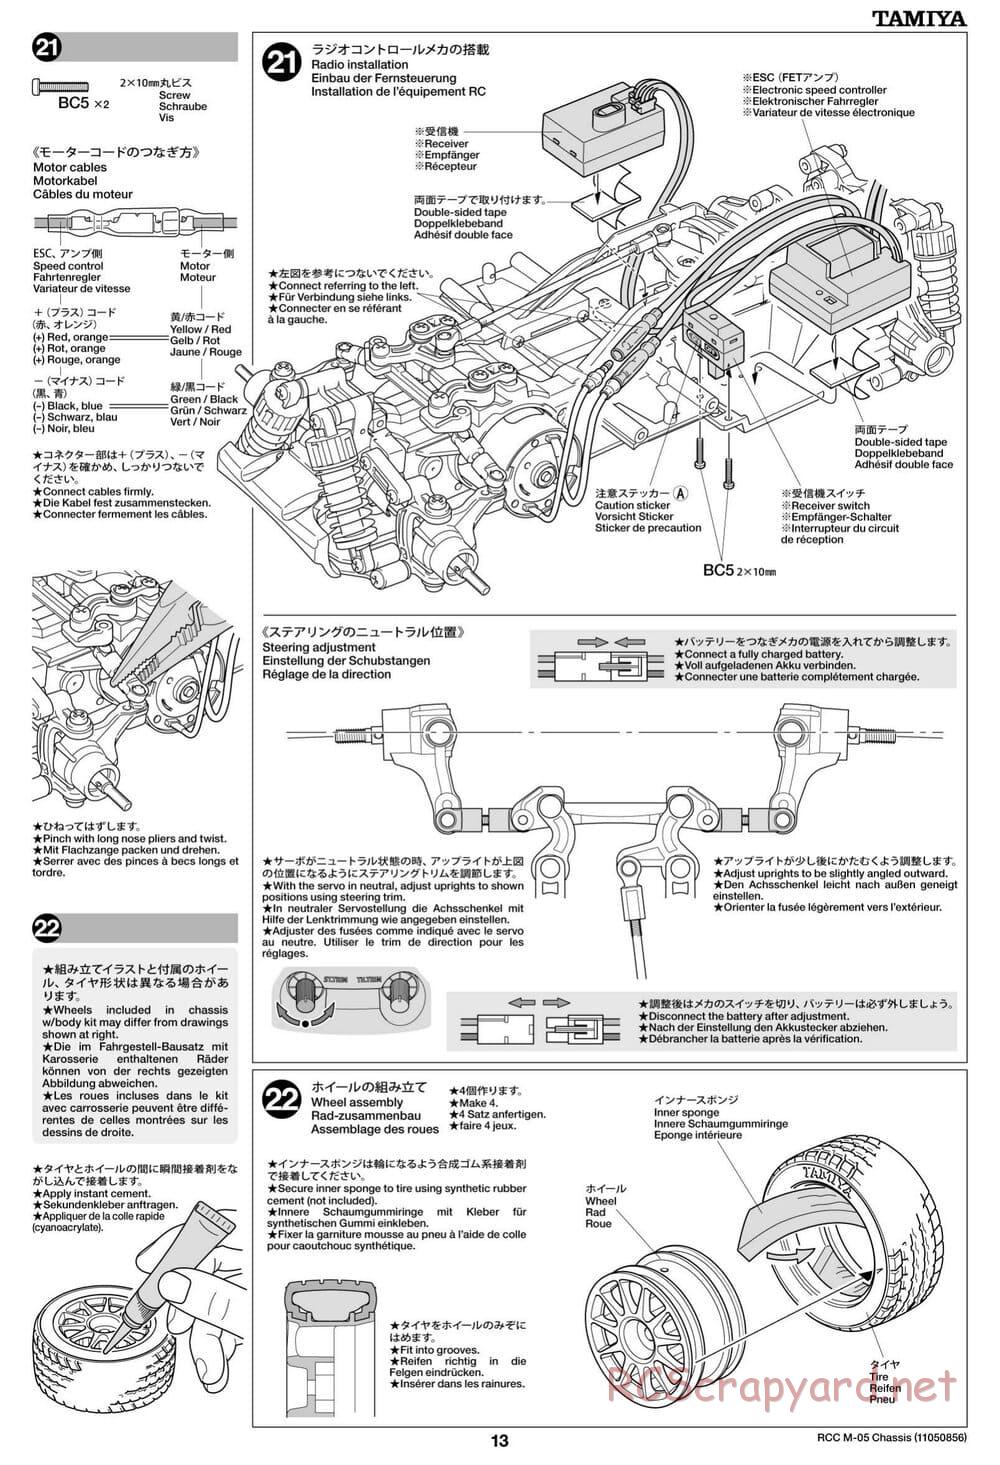 Tamiya - M-05 Chassis - Manual - Page 13